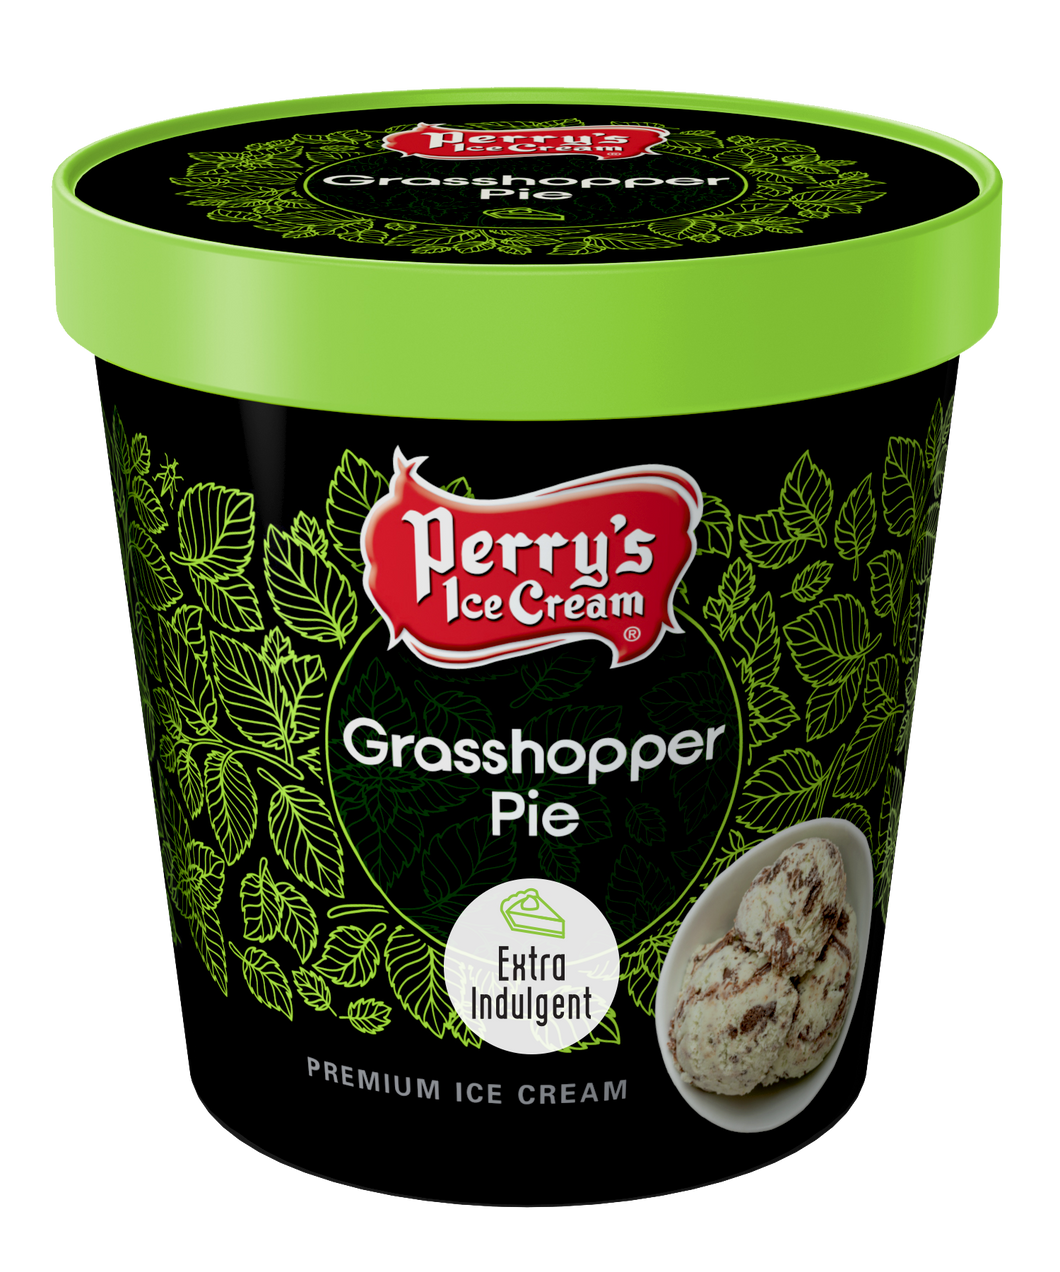 Grasshopper Pie ice cream